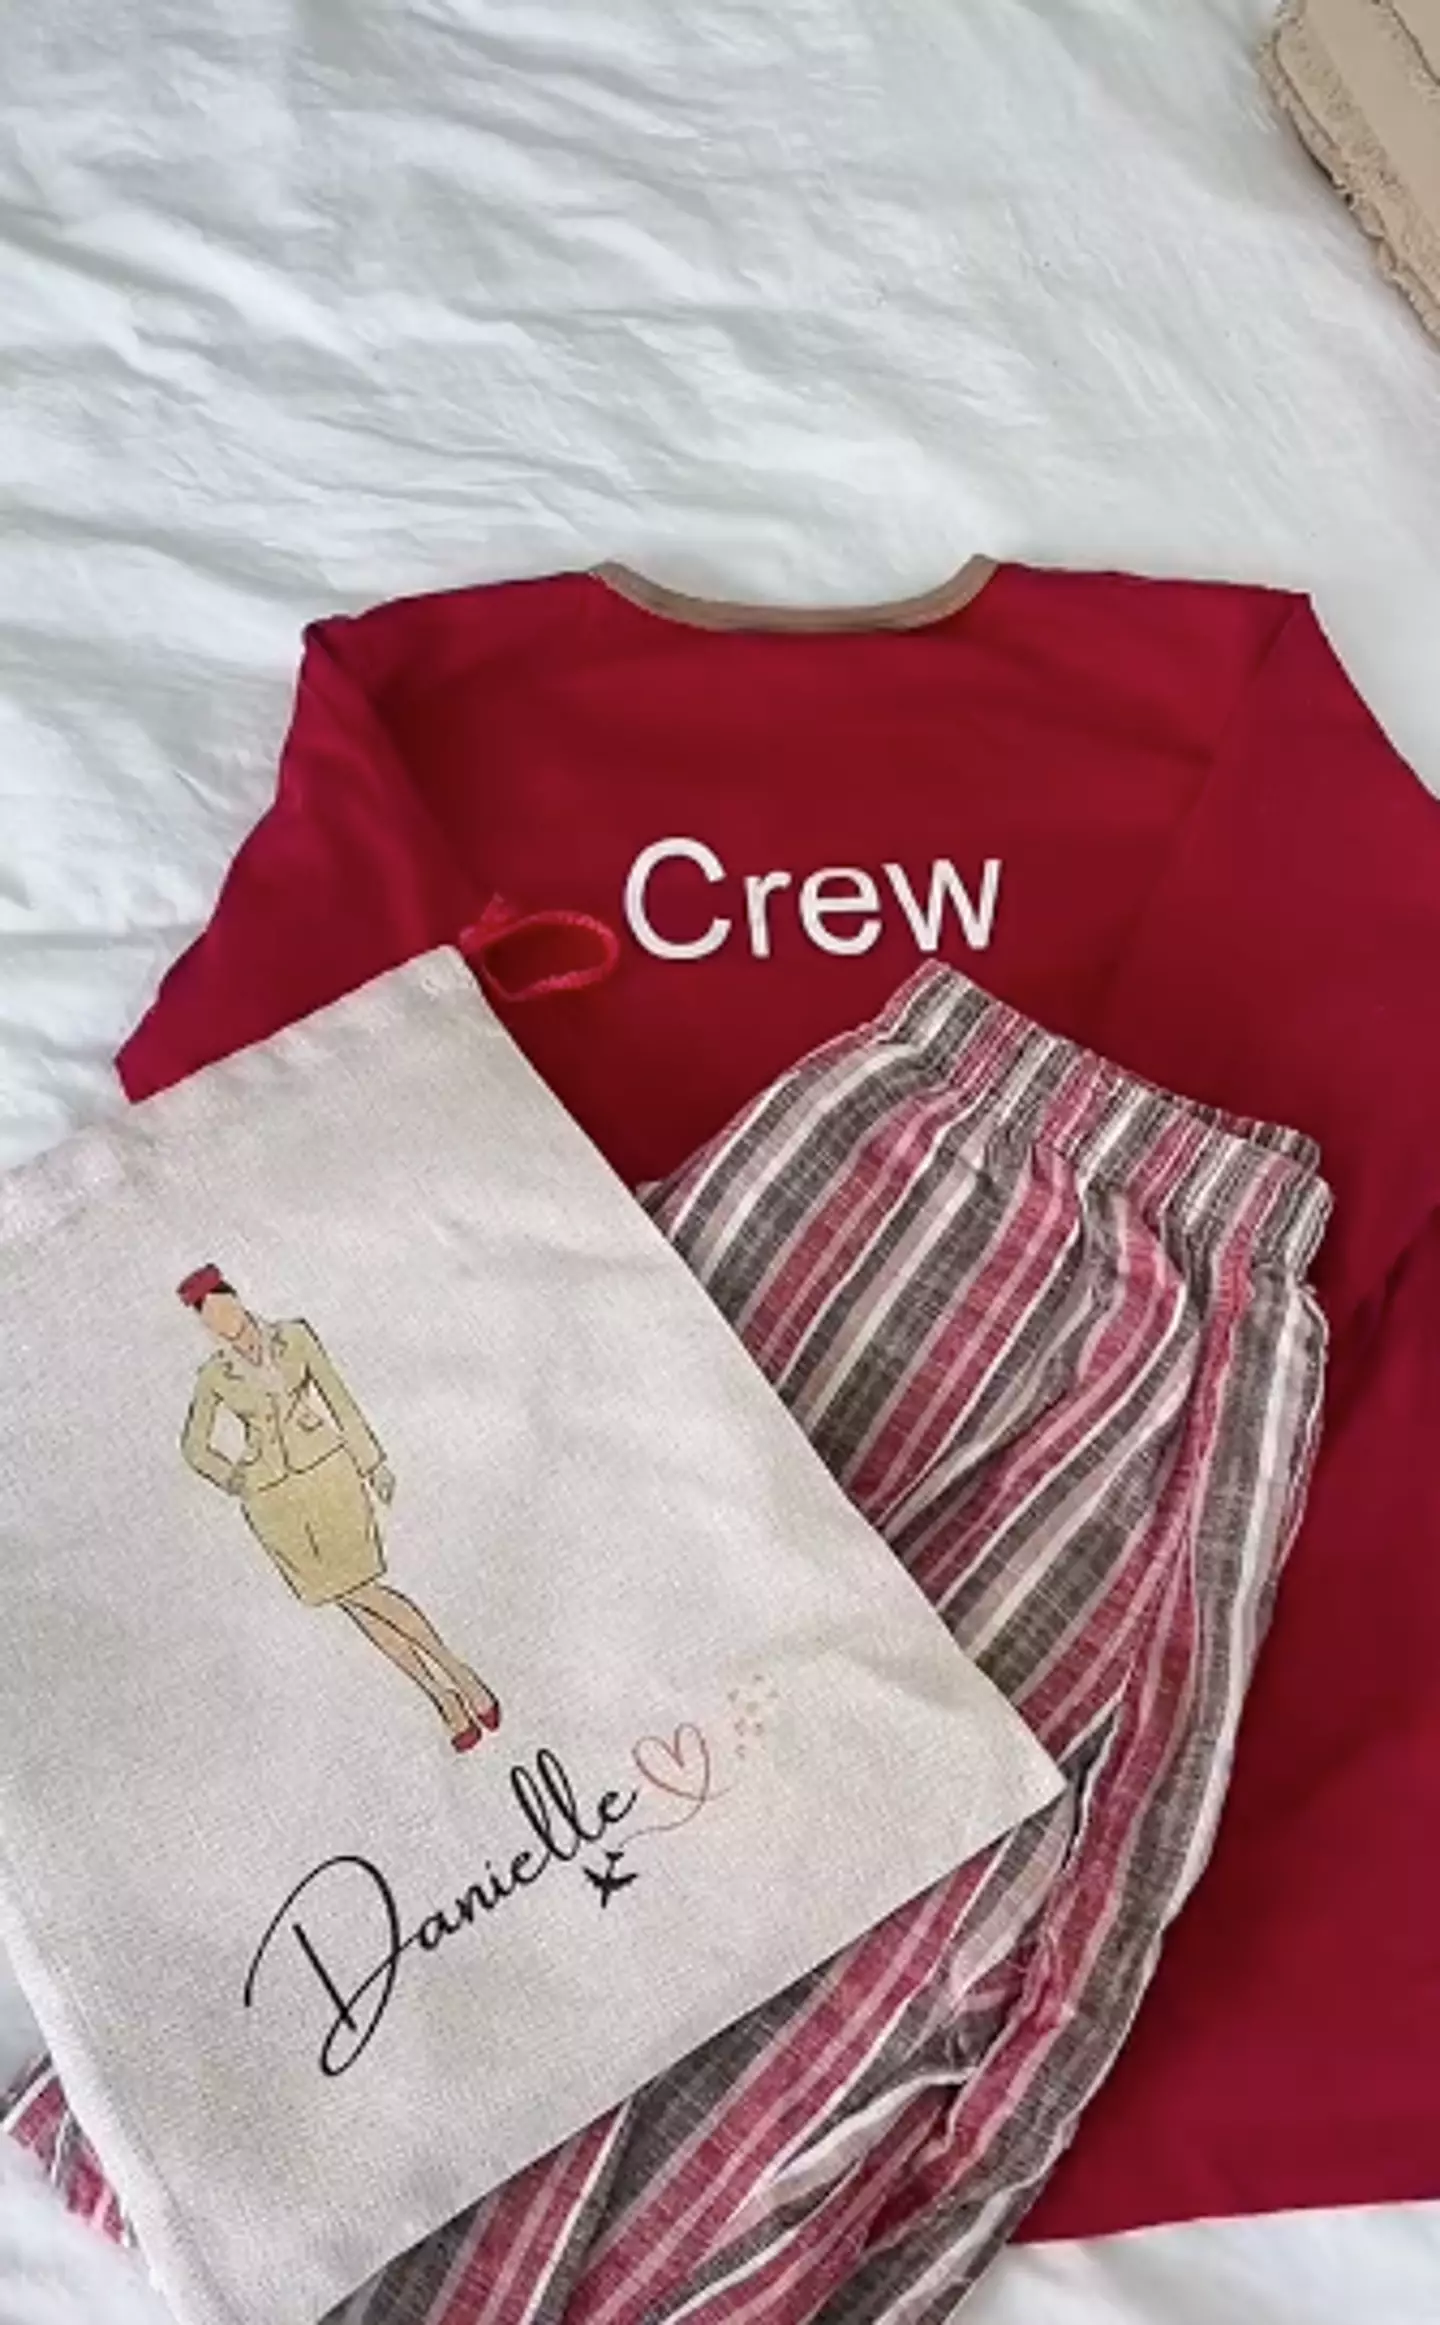 Danielle's crew pyjamas.